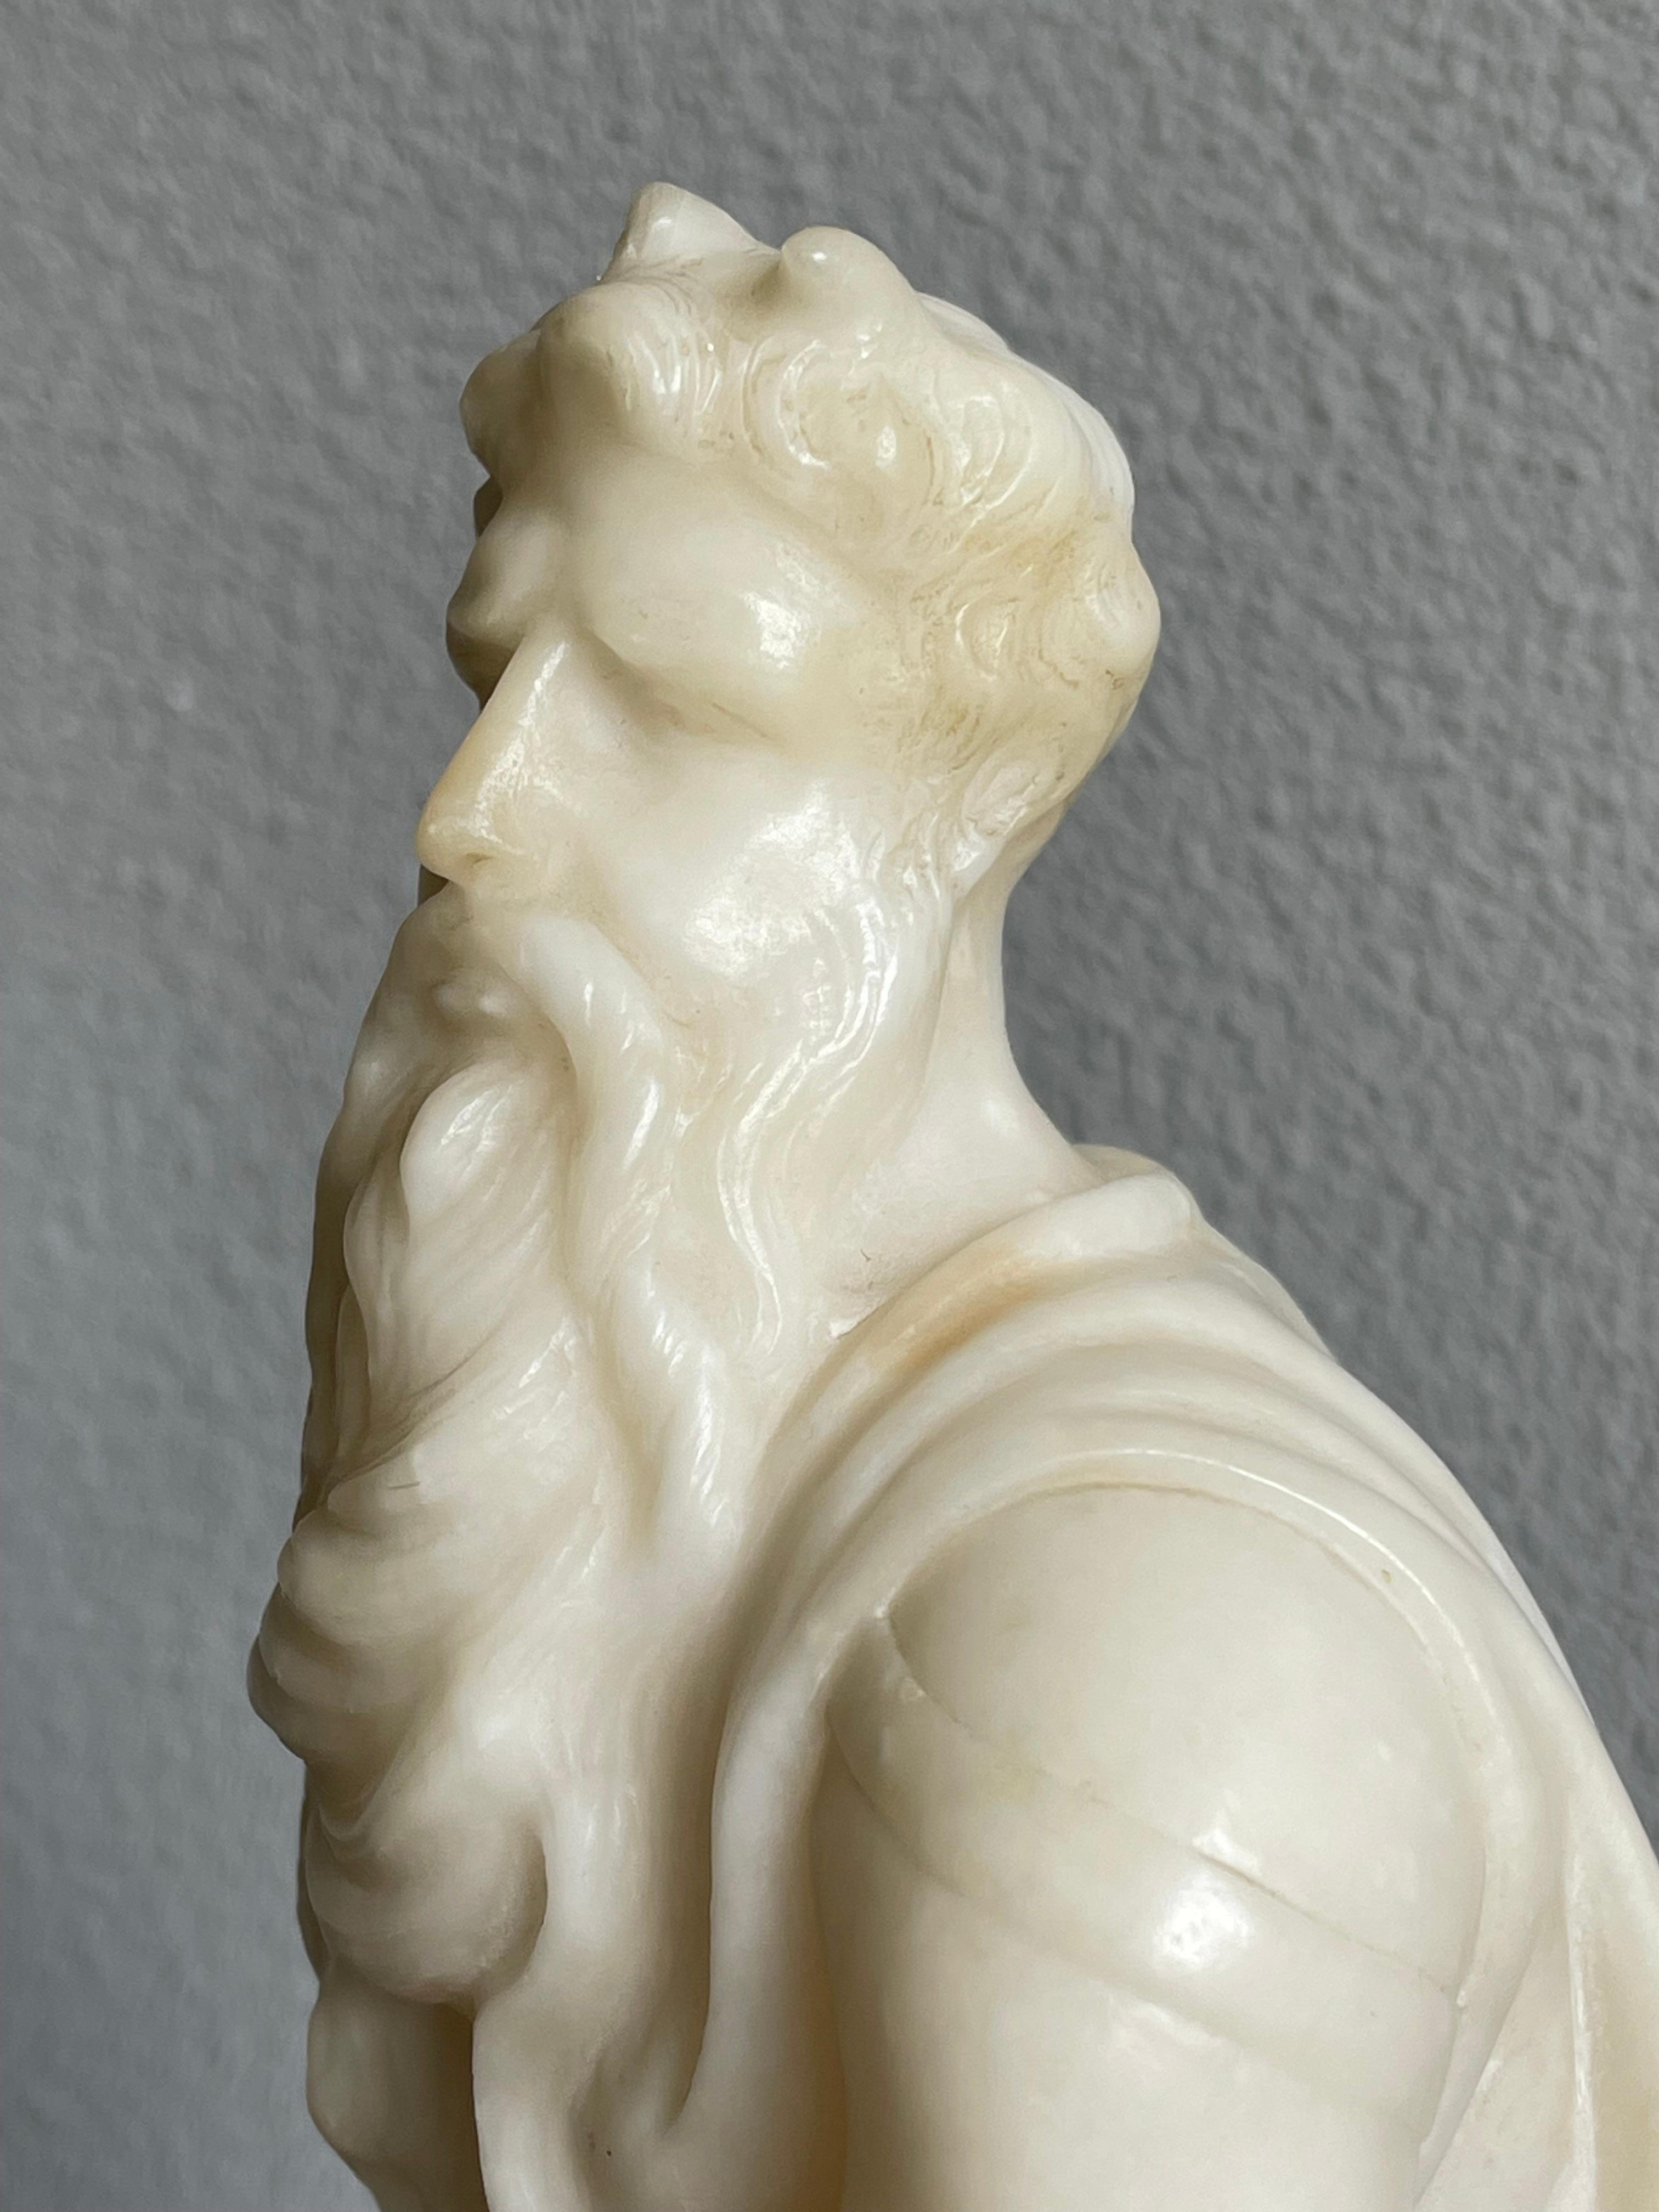 Hochwertige geschnitzte antike Moses-Skulptur nach dem Original-Marmor-Moses von Michelangelo. 

Wenn Sie ein Sammler von seltenen und hochwertig gefertigten biblischen Antiquitäten sind, dann könnte diese handgeschnitzte Grand-Tour-Skulptur bald